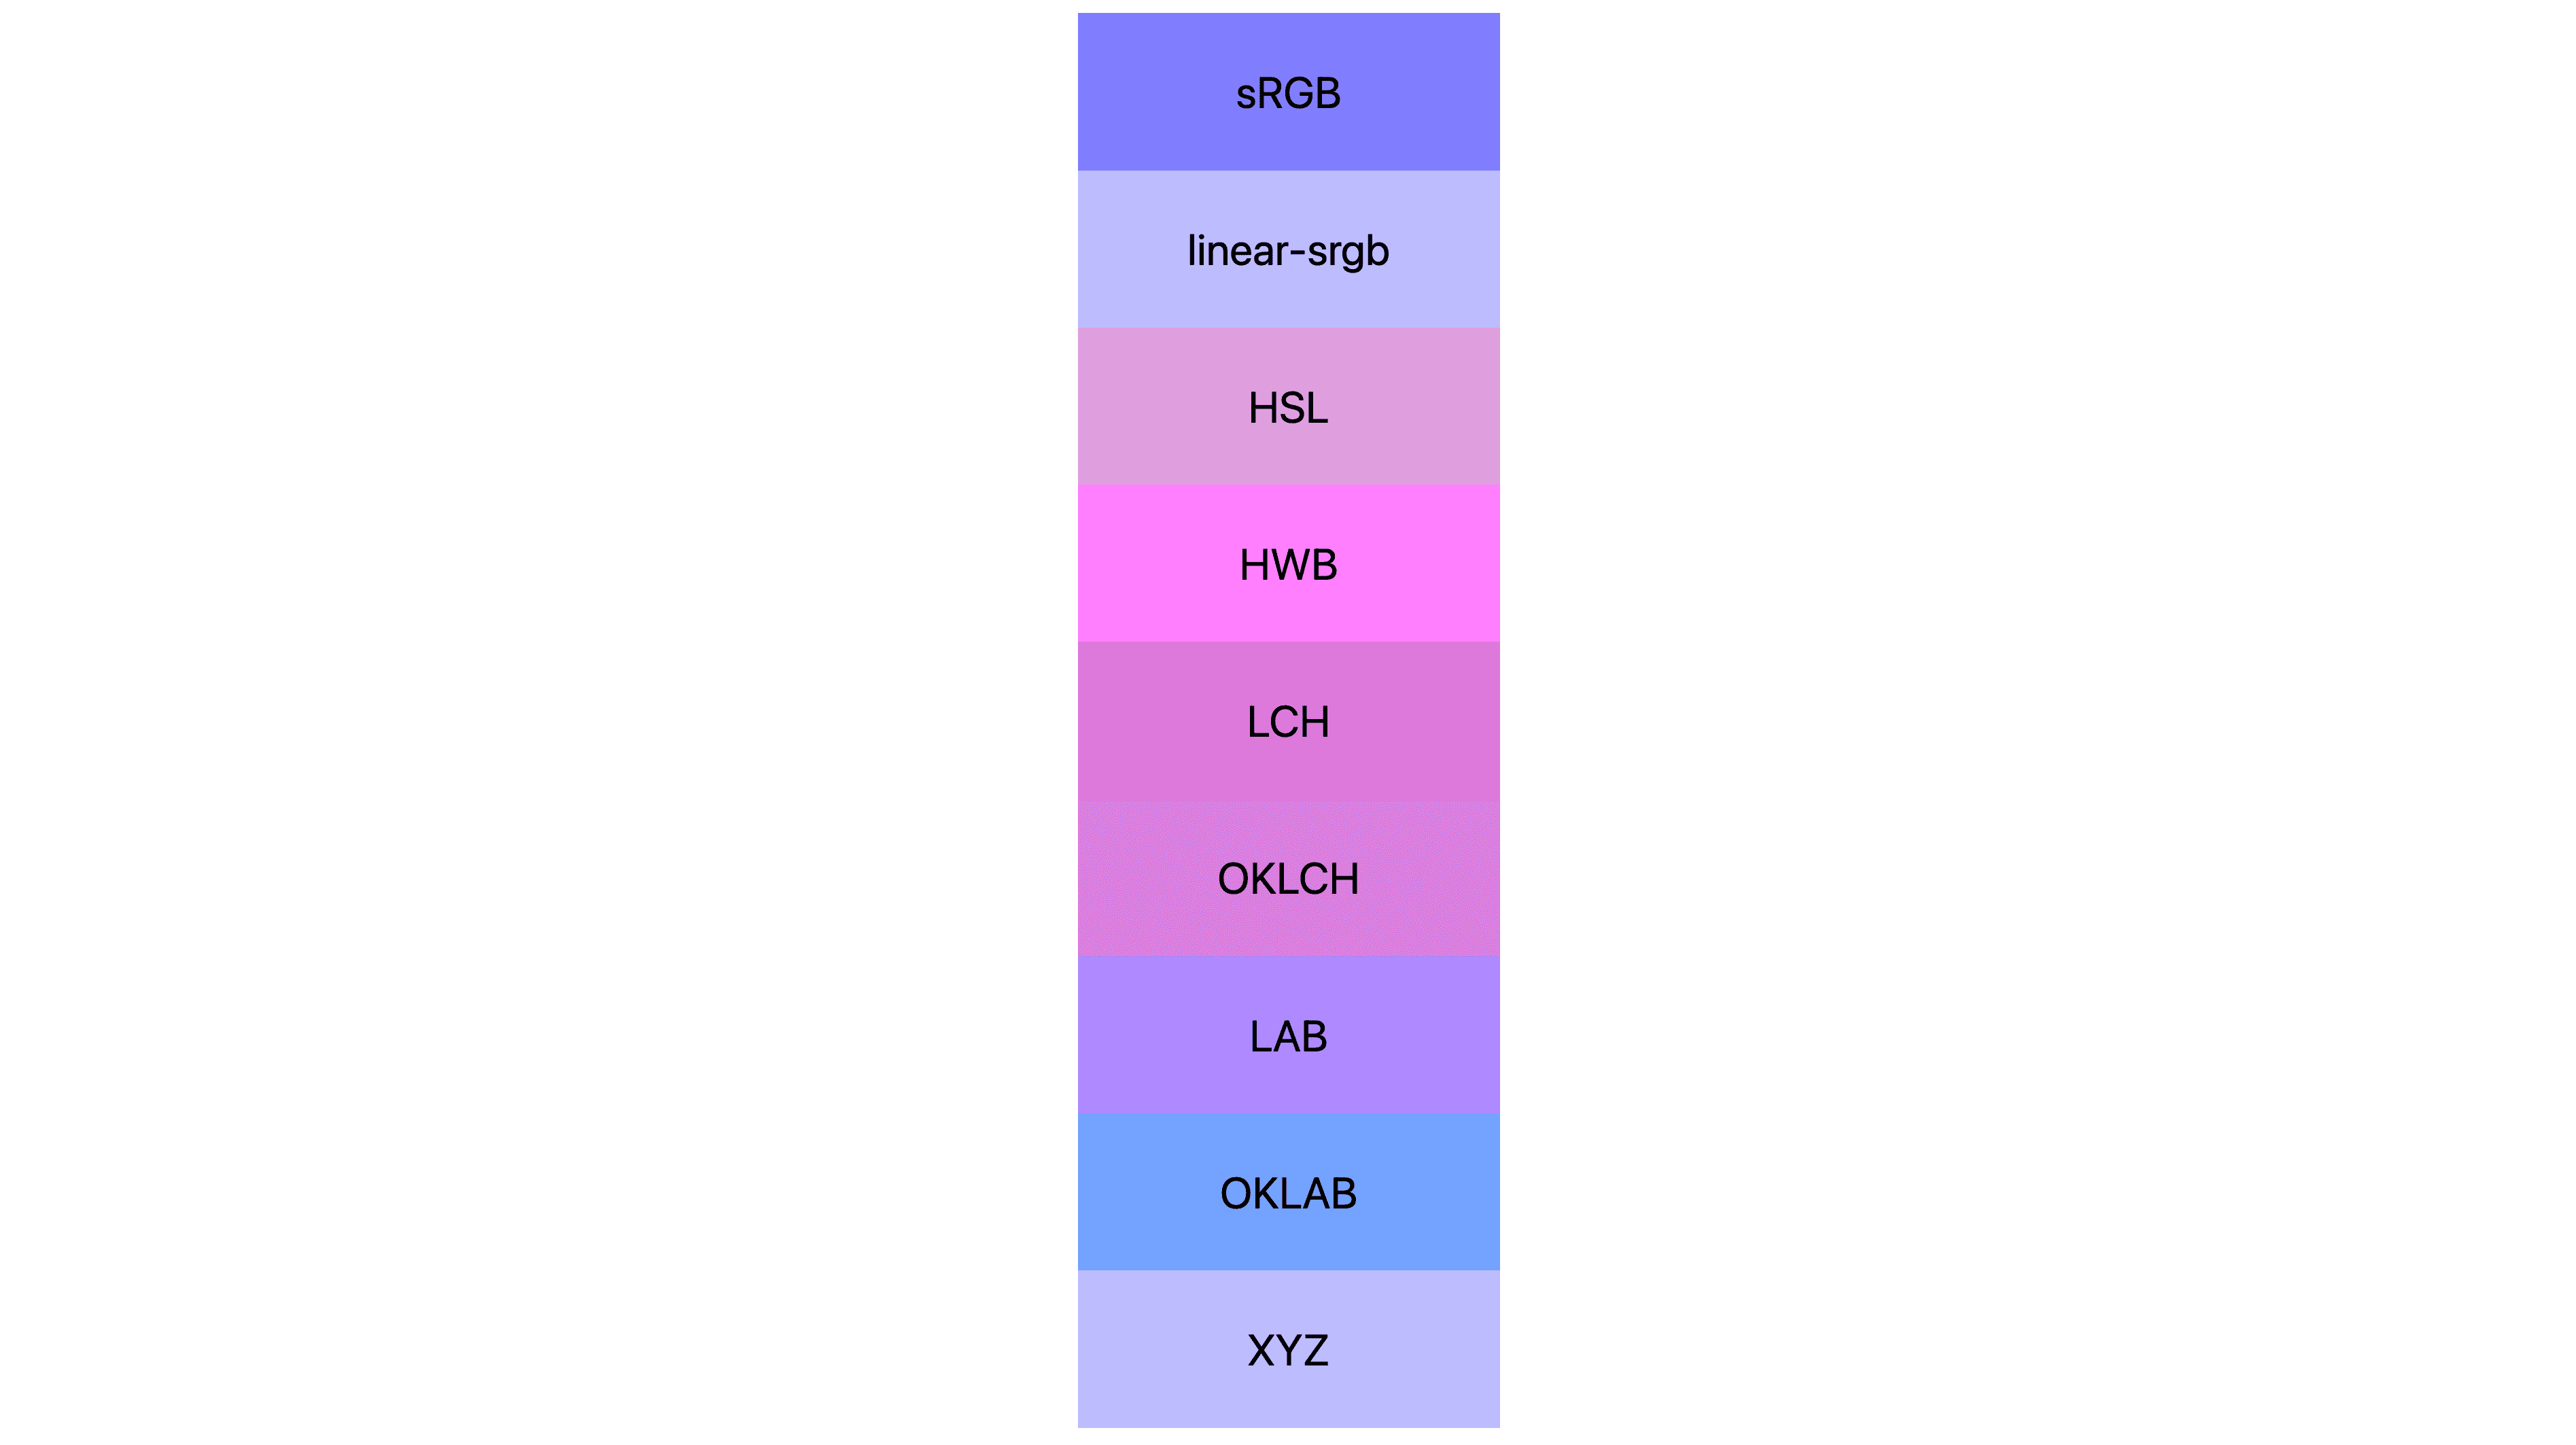 7 מרחבי צבעים (srgb , לינארי-srgb, lch, oklch, lab, oklab, xyz), שכל אחד מהם מוצג והתוצאות שלו שונות. רבים מהם ורודים או סגולים, חלקם עדיין כחולים.